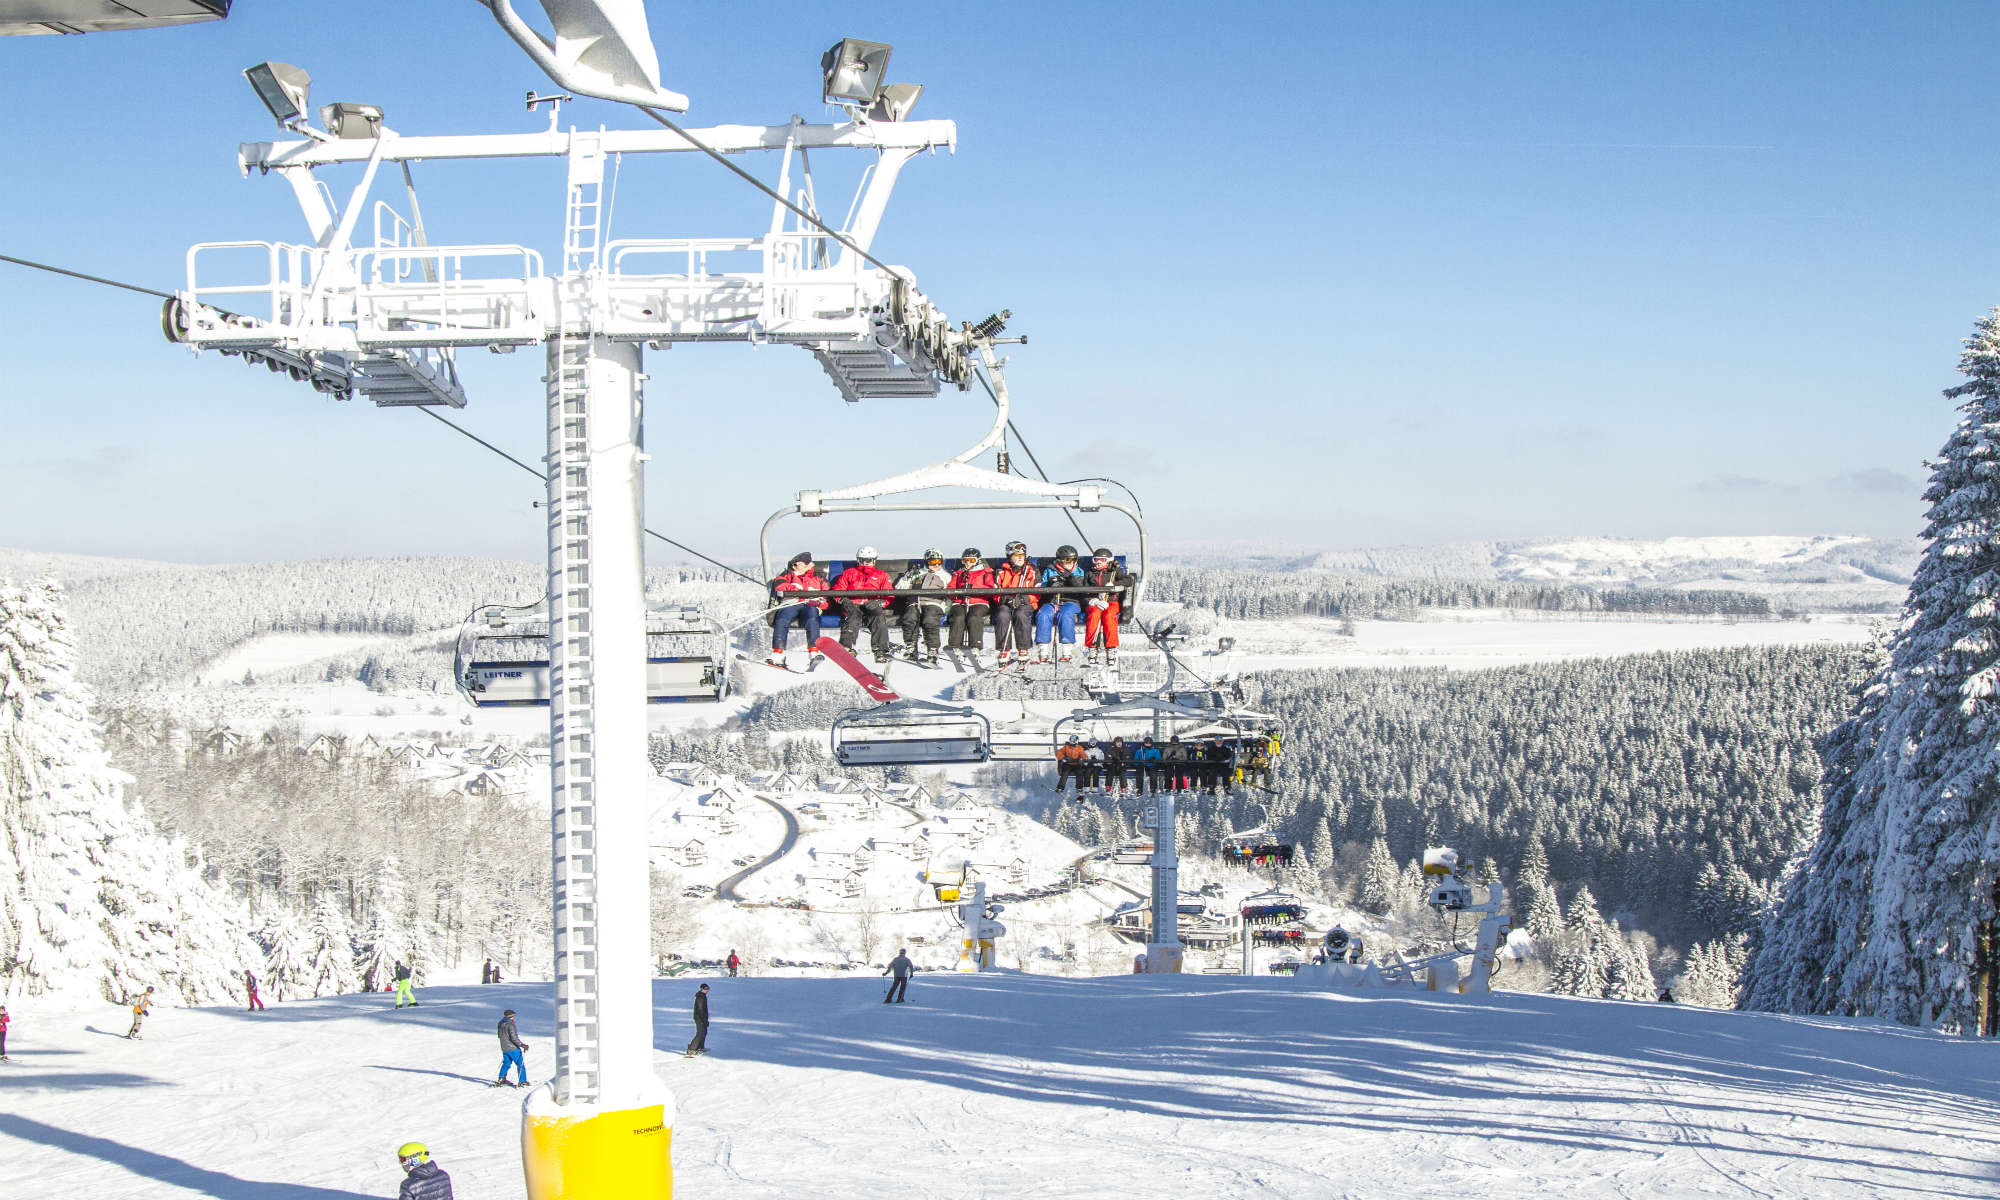 Blik op een skilift en een zonnig winters landschap in Winterberg.